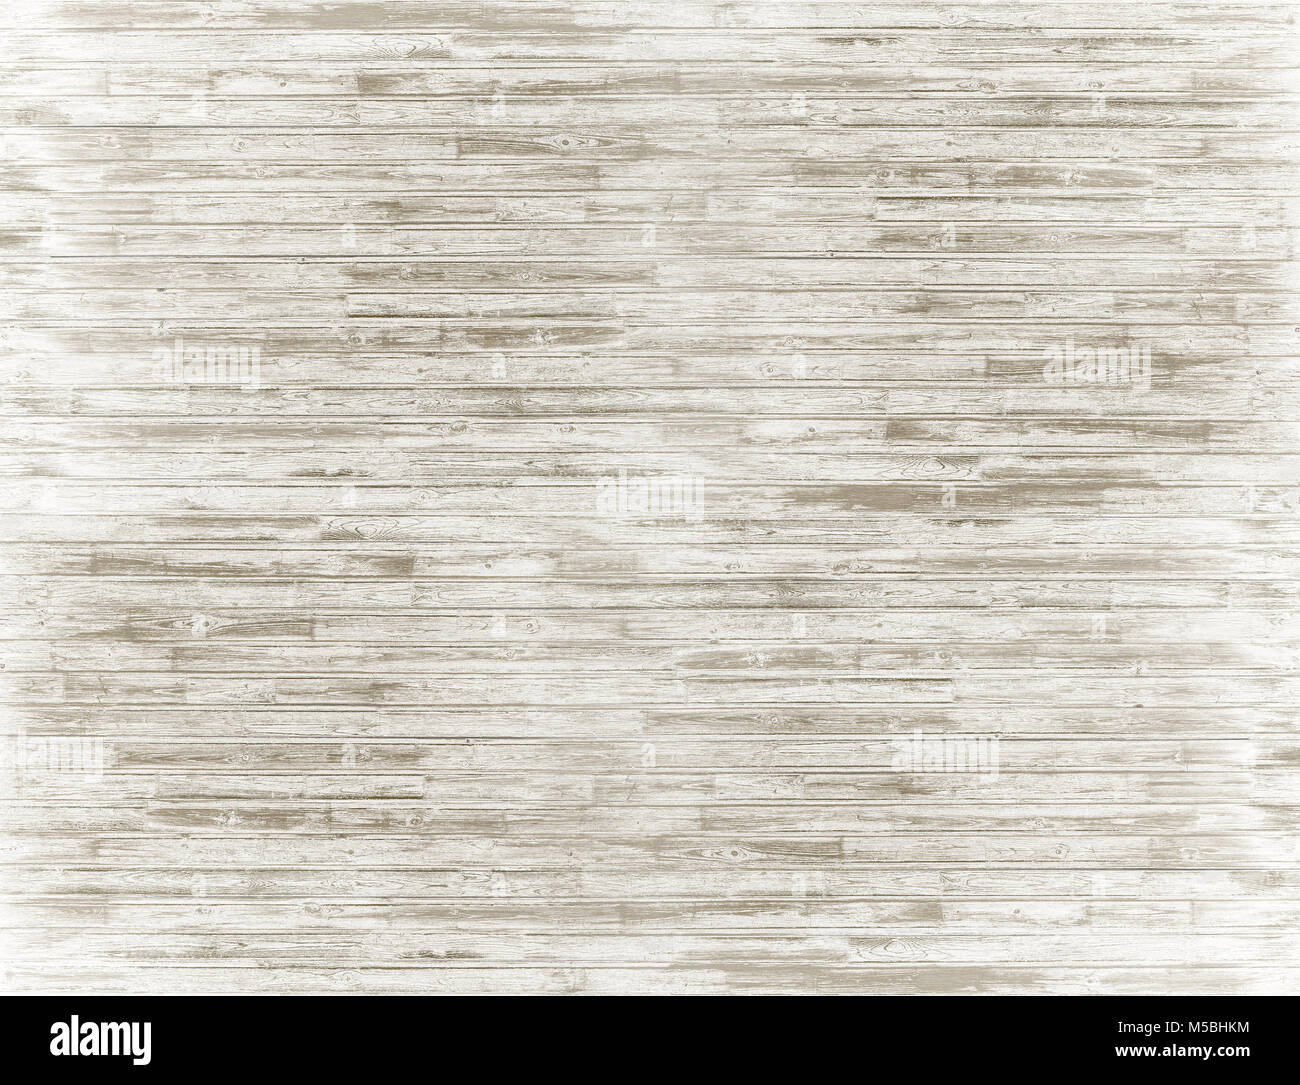 White wood background Stock Photo